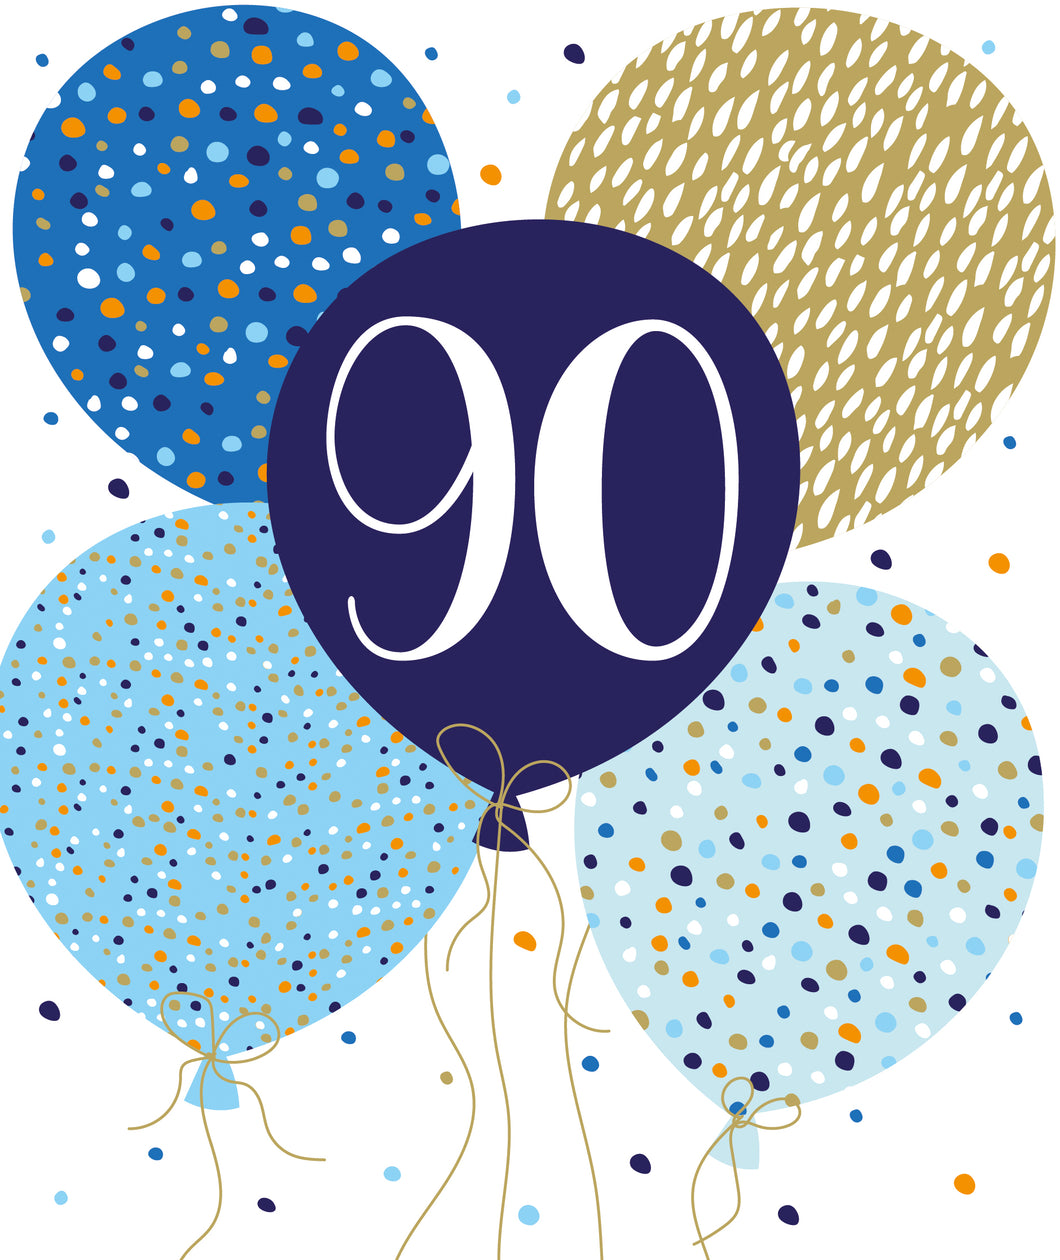 90th Birthday - Birthday Cards